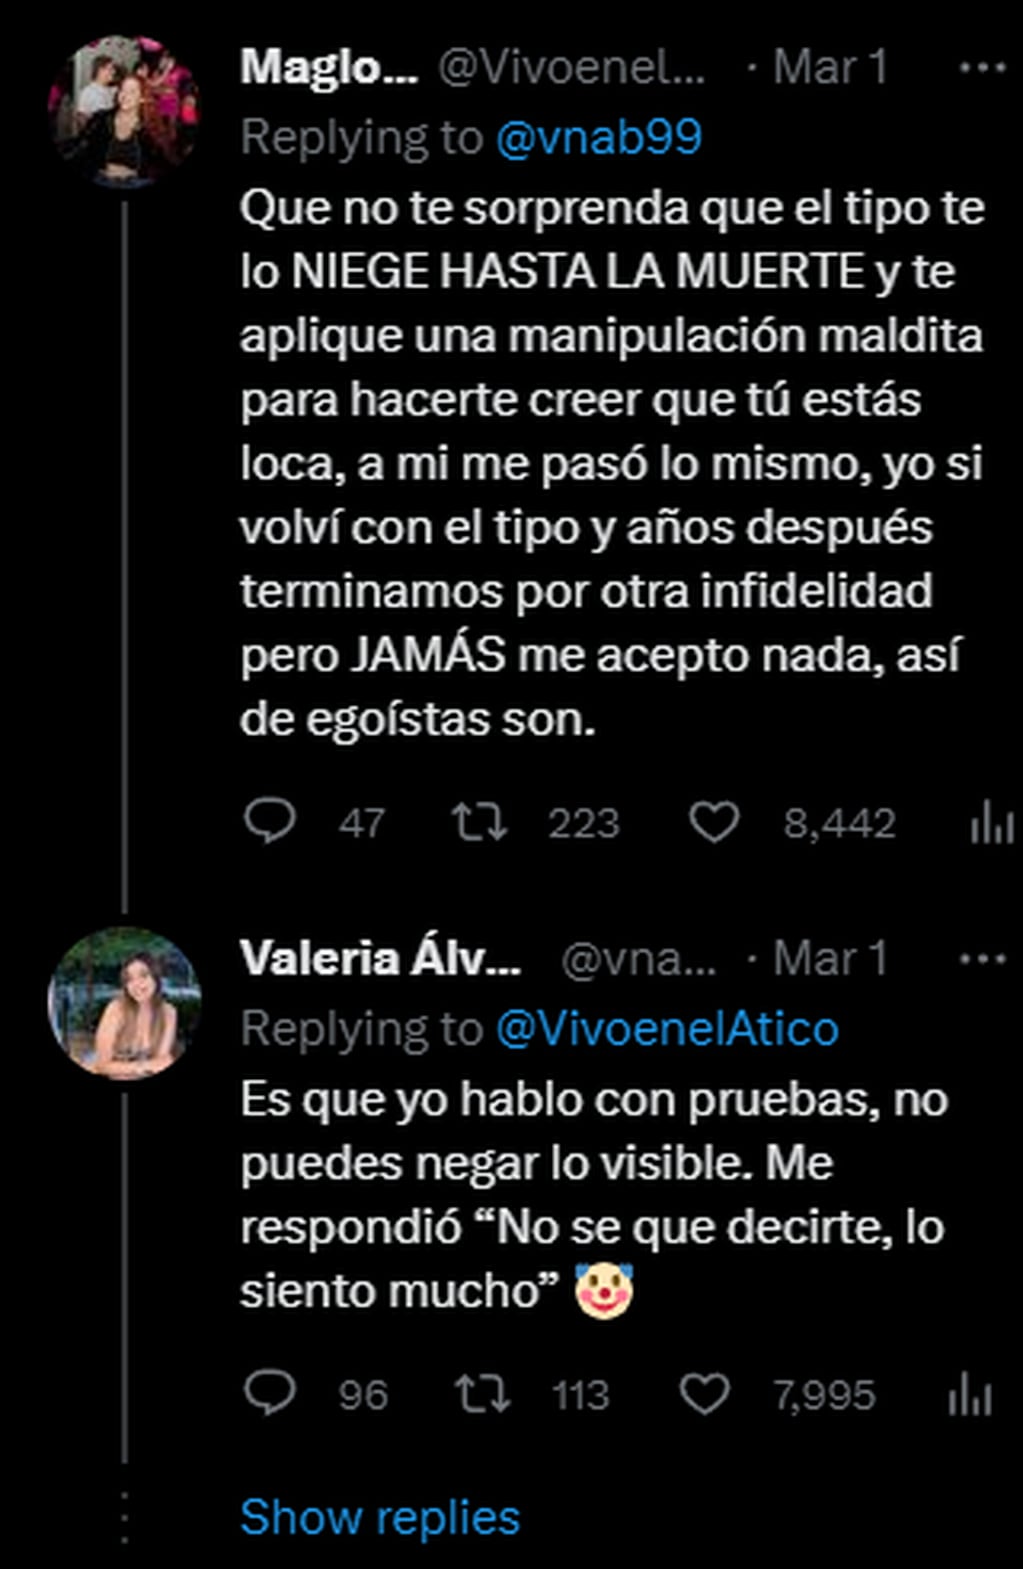 Comentarios en el posteo de Valeria. Foto: Twitter/@vnab99